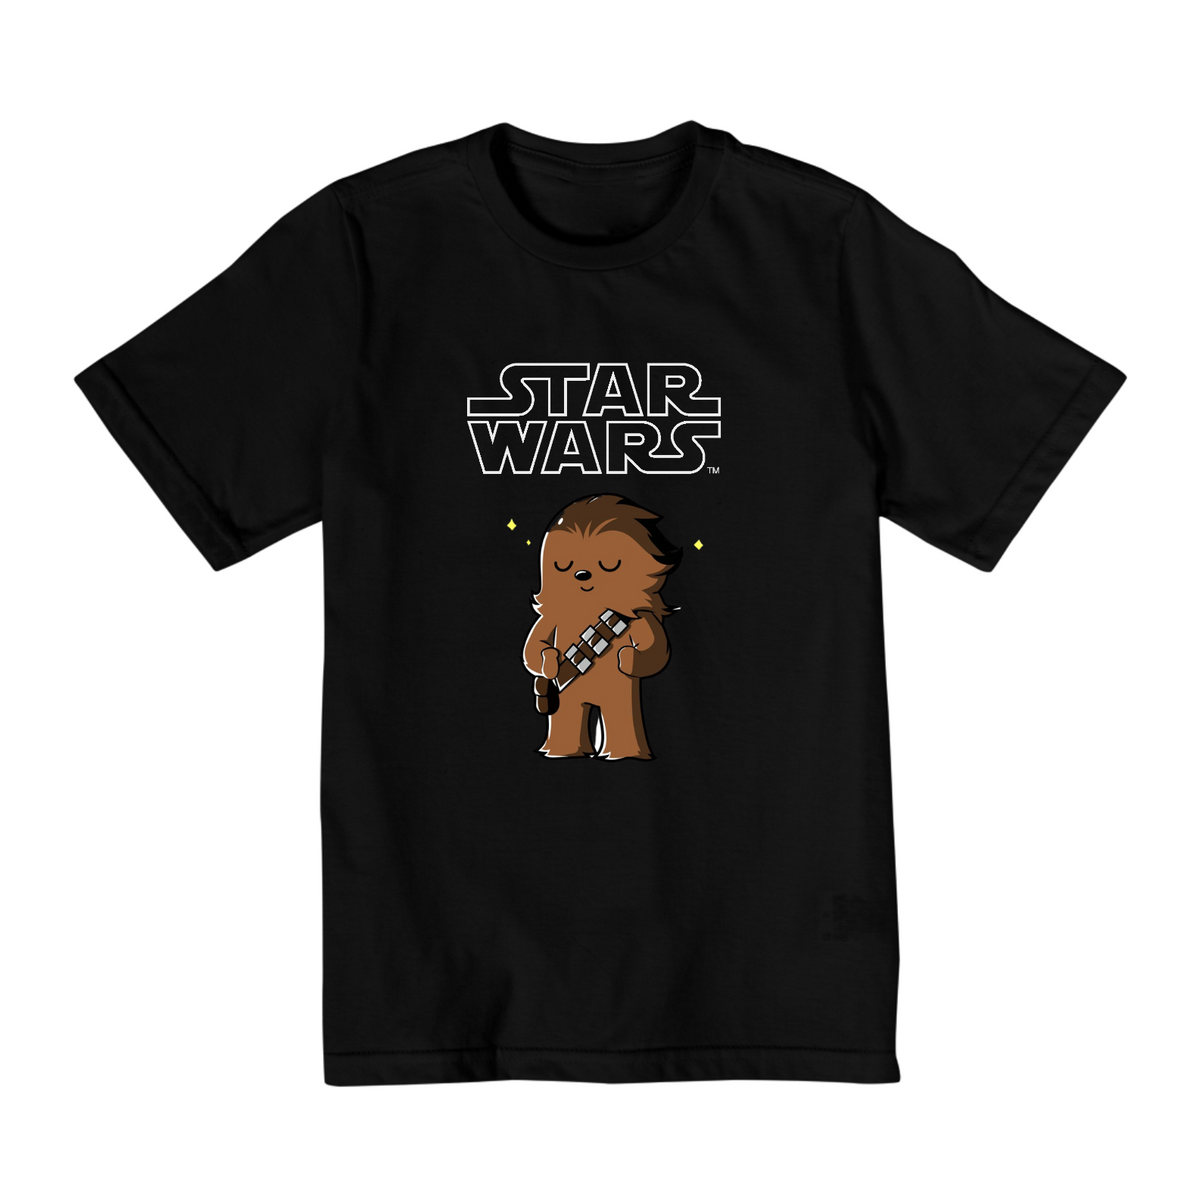 Nome do produto: Coleção Star Wars - Camiseta infantil 02 a 08 anos - Chewbacca 